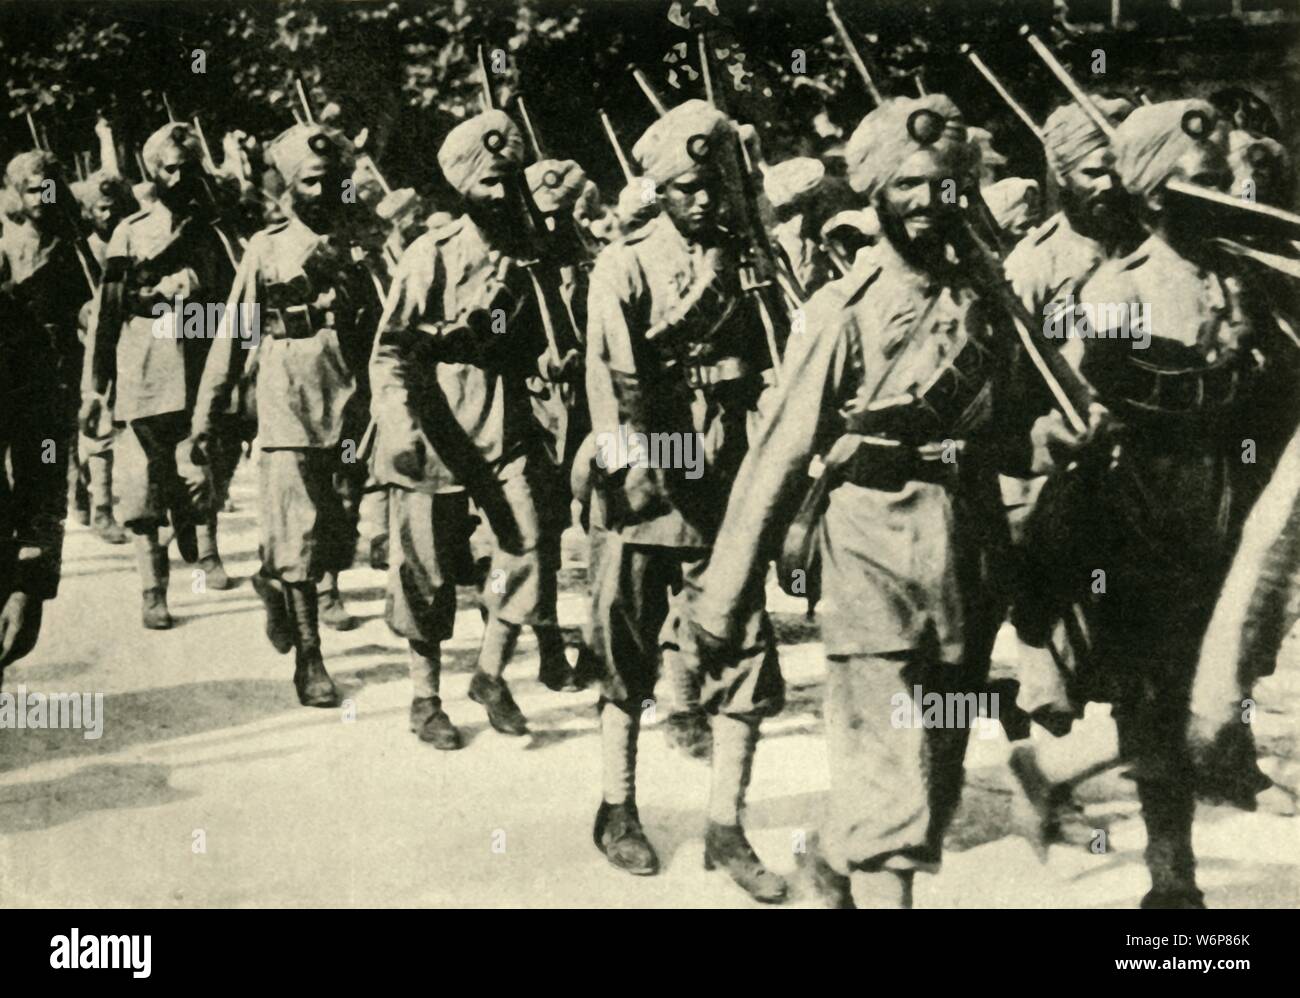 Des soldats indiens en France, Première Guerre mondiale, 1914, c1920). Un régiment Sikh sur la mars. Plus d'un million de soldats indiens dans l'armée indienne britannique (du Raj) se sont battus dans l', Méditerranée et Moyen-Orient théâtres de guerre. Au moins 74 187 soldats indiens morts, avec 67 000 blessés. "De la Grande Guerre - une histoire" Volume I, édité par Frank UN Mumby. [Le Gresham Publishing Company Ltd, London, c1920] Banque D'Images